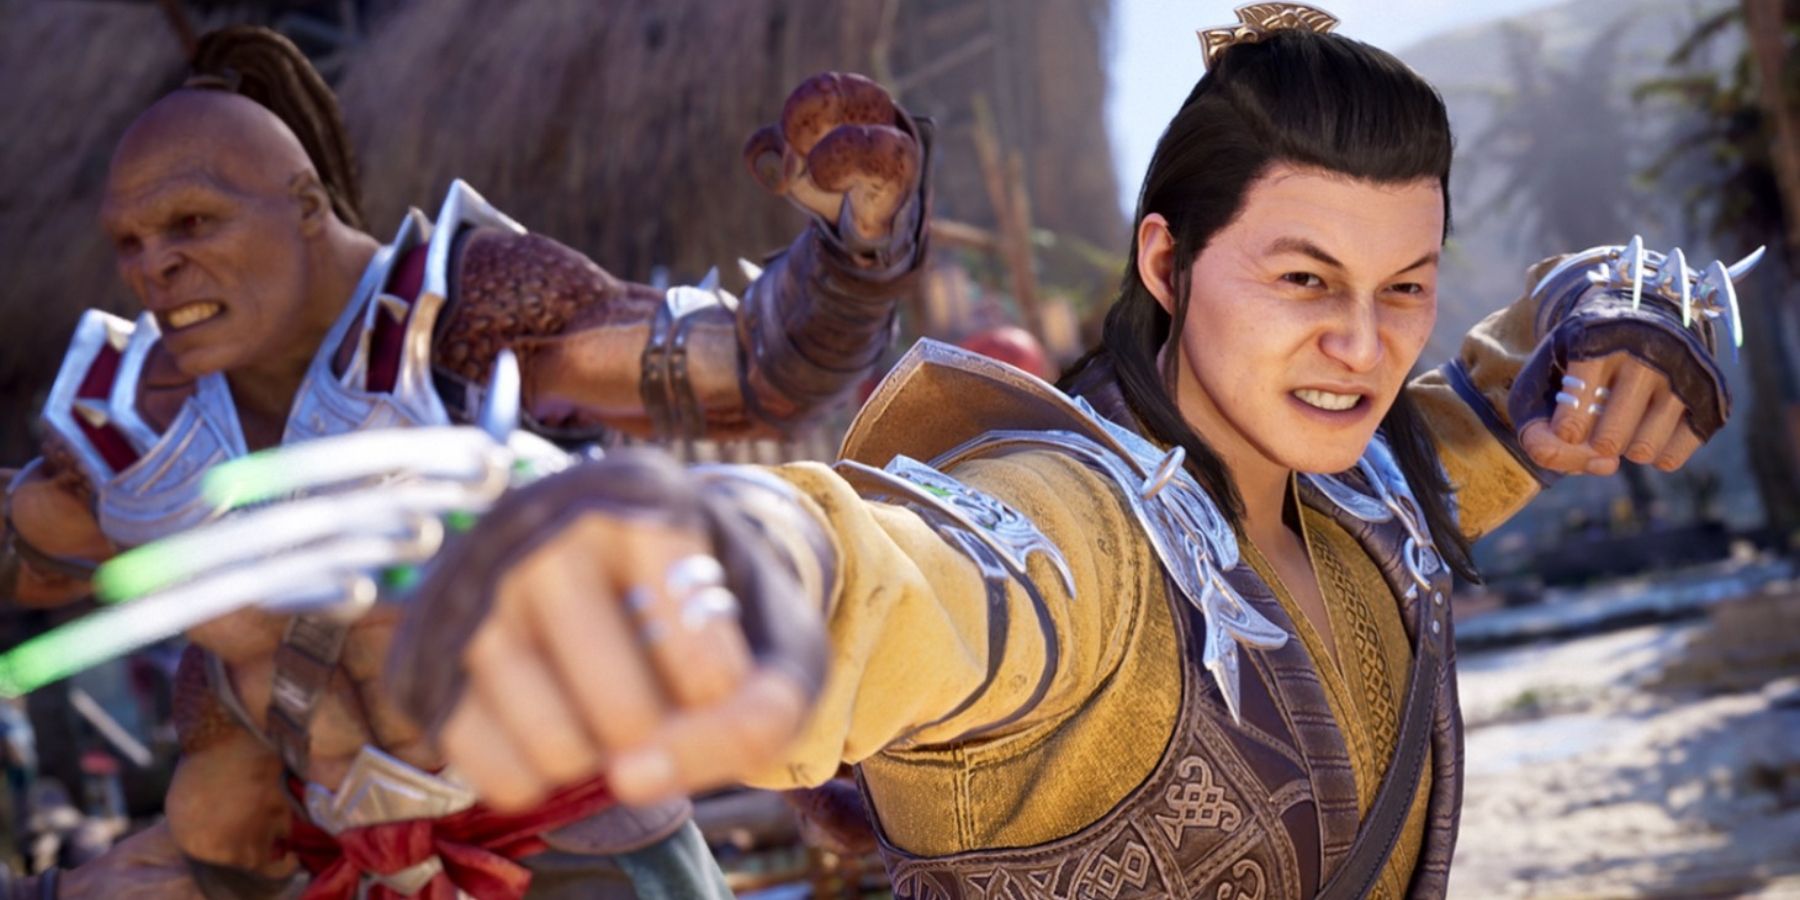 Cary-Hiroyuki Tagawa Will Reprise His Role as Shang Tsung - Mortal Kombat  Secrets